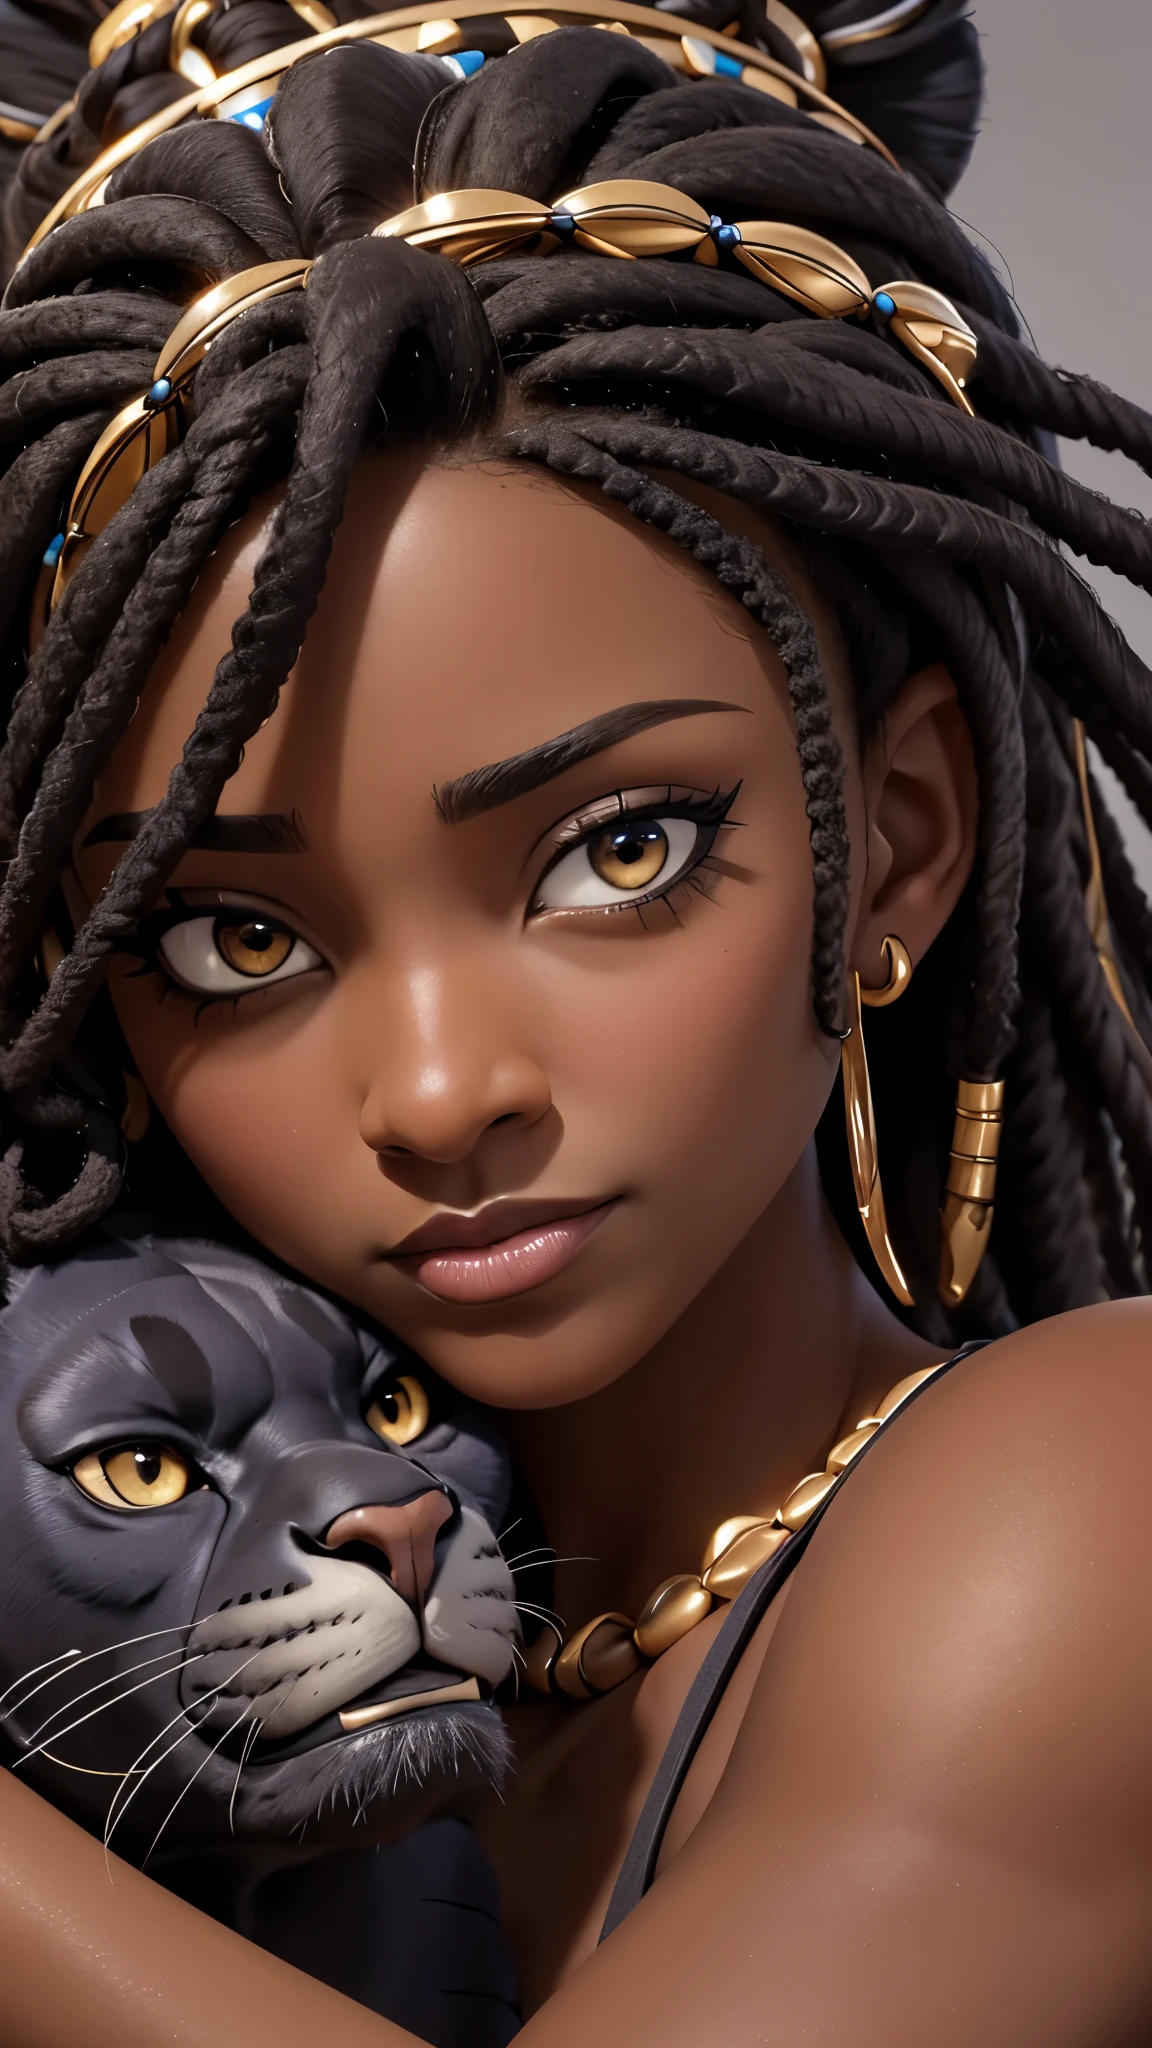 ((beste Qualität)), ((Meisterwerk)), (ausführlich), (Nahaufnahme), (Kopfschuss), Dunkle Haut, perfektes Gesicht schöne afrikanische Frau mit Perlen Dreads auf ihren Schultern, einen Panther kuscheln, mit einem Pantherkopf, der ihr Gesicht reibt, HDR, 4K, 3D